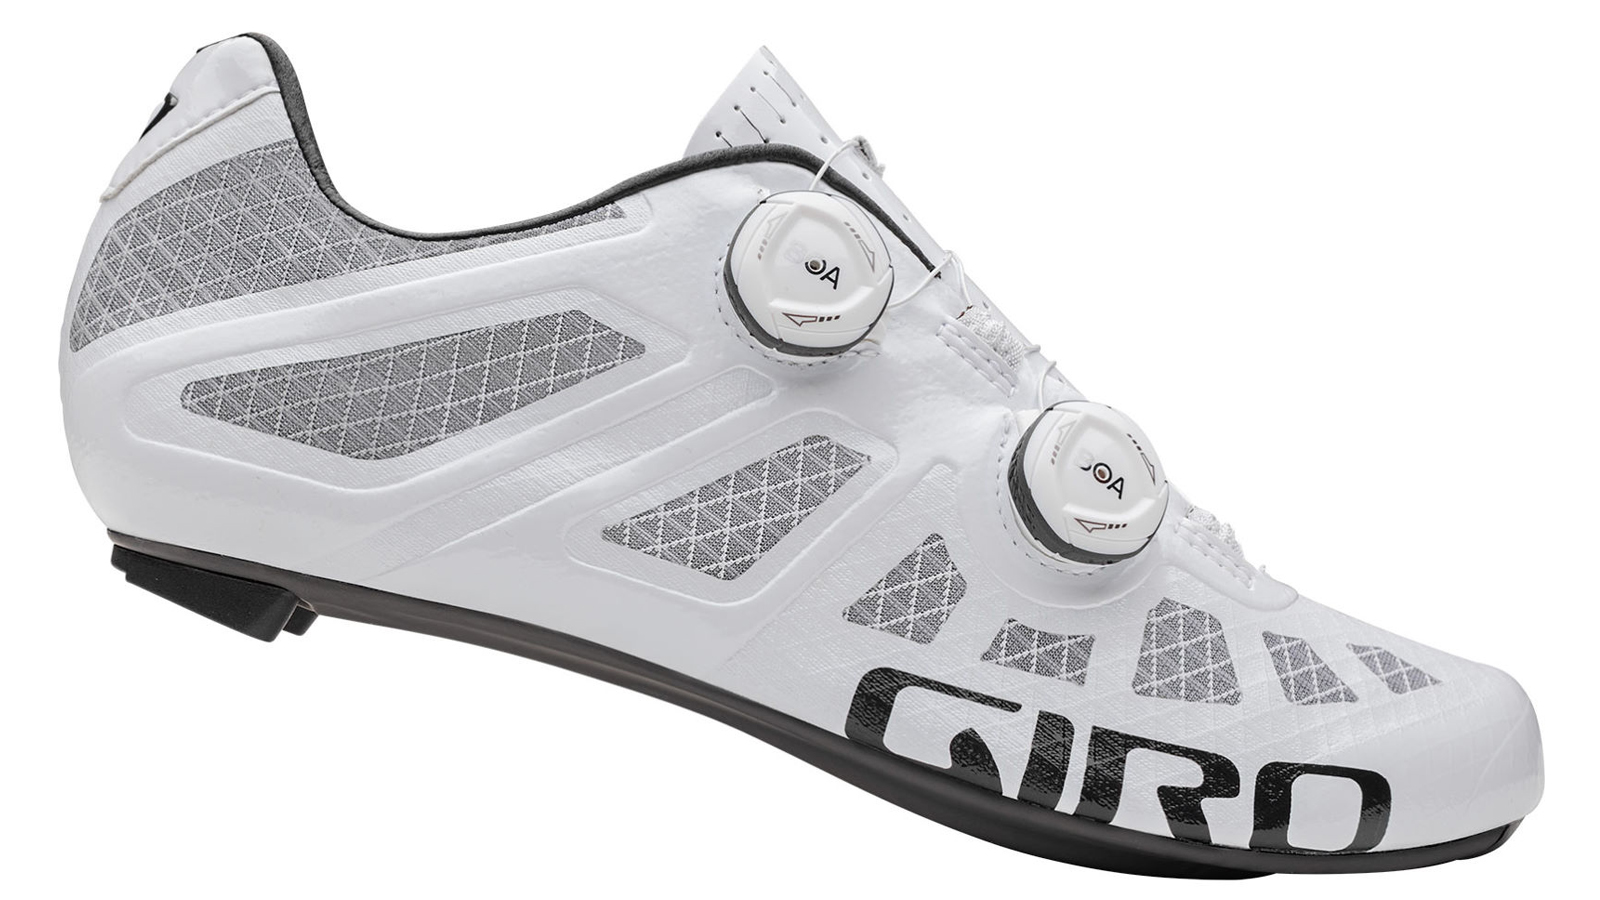 Giro road cycling shoes | Cyclingnews